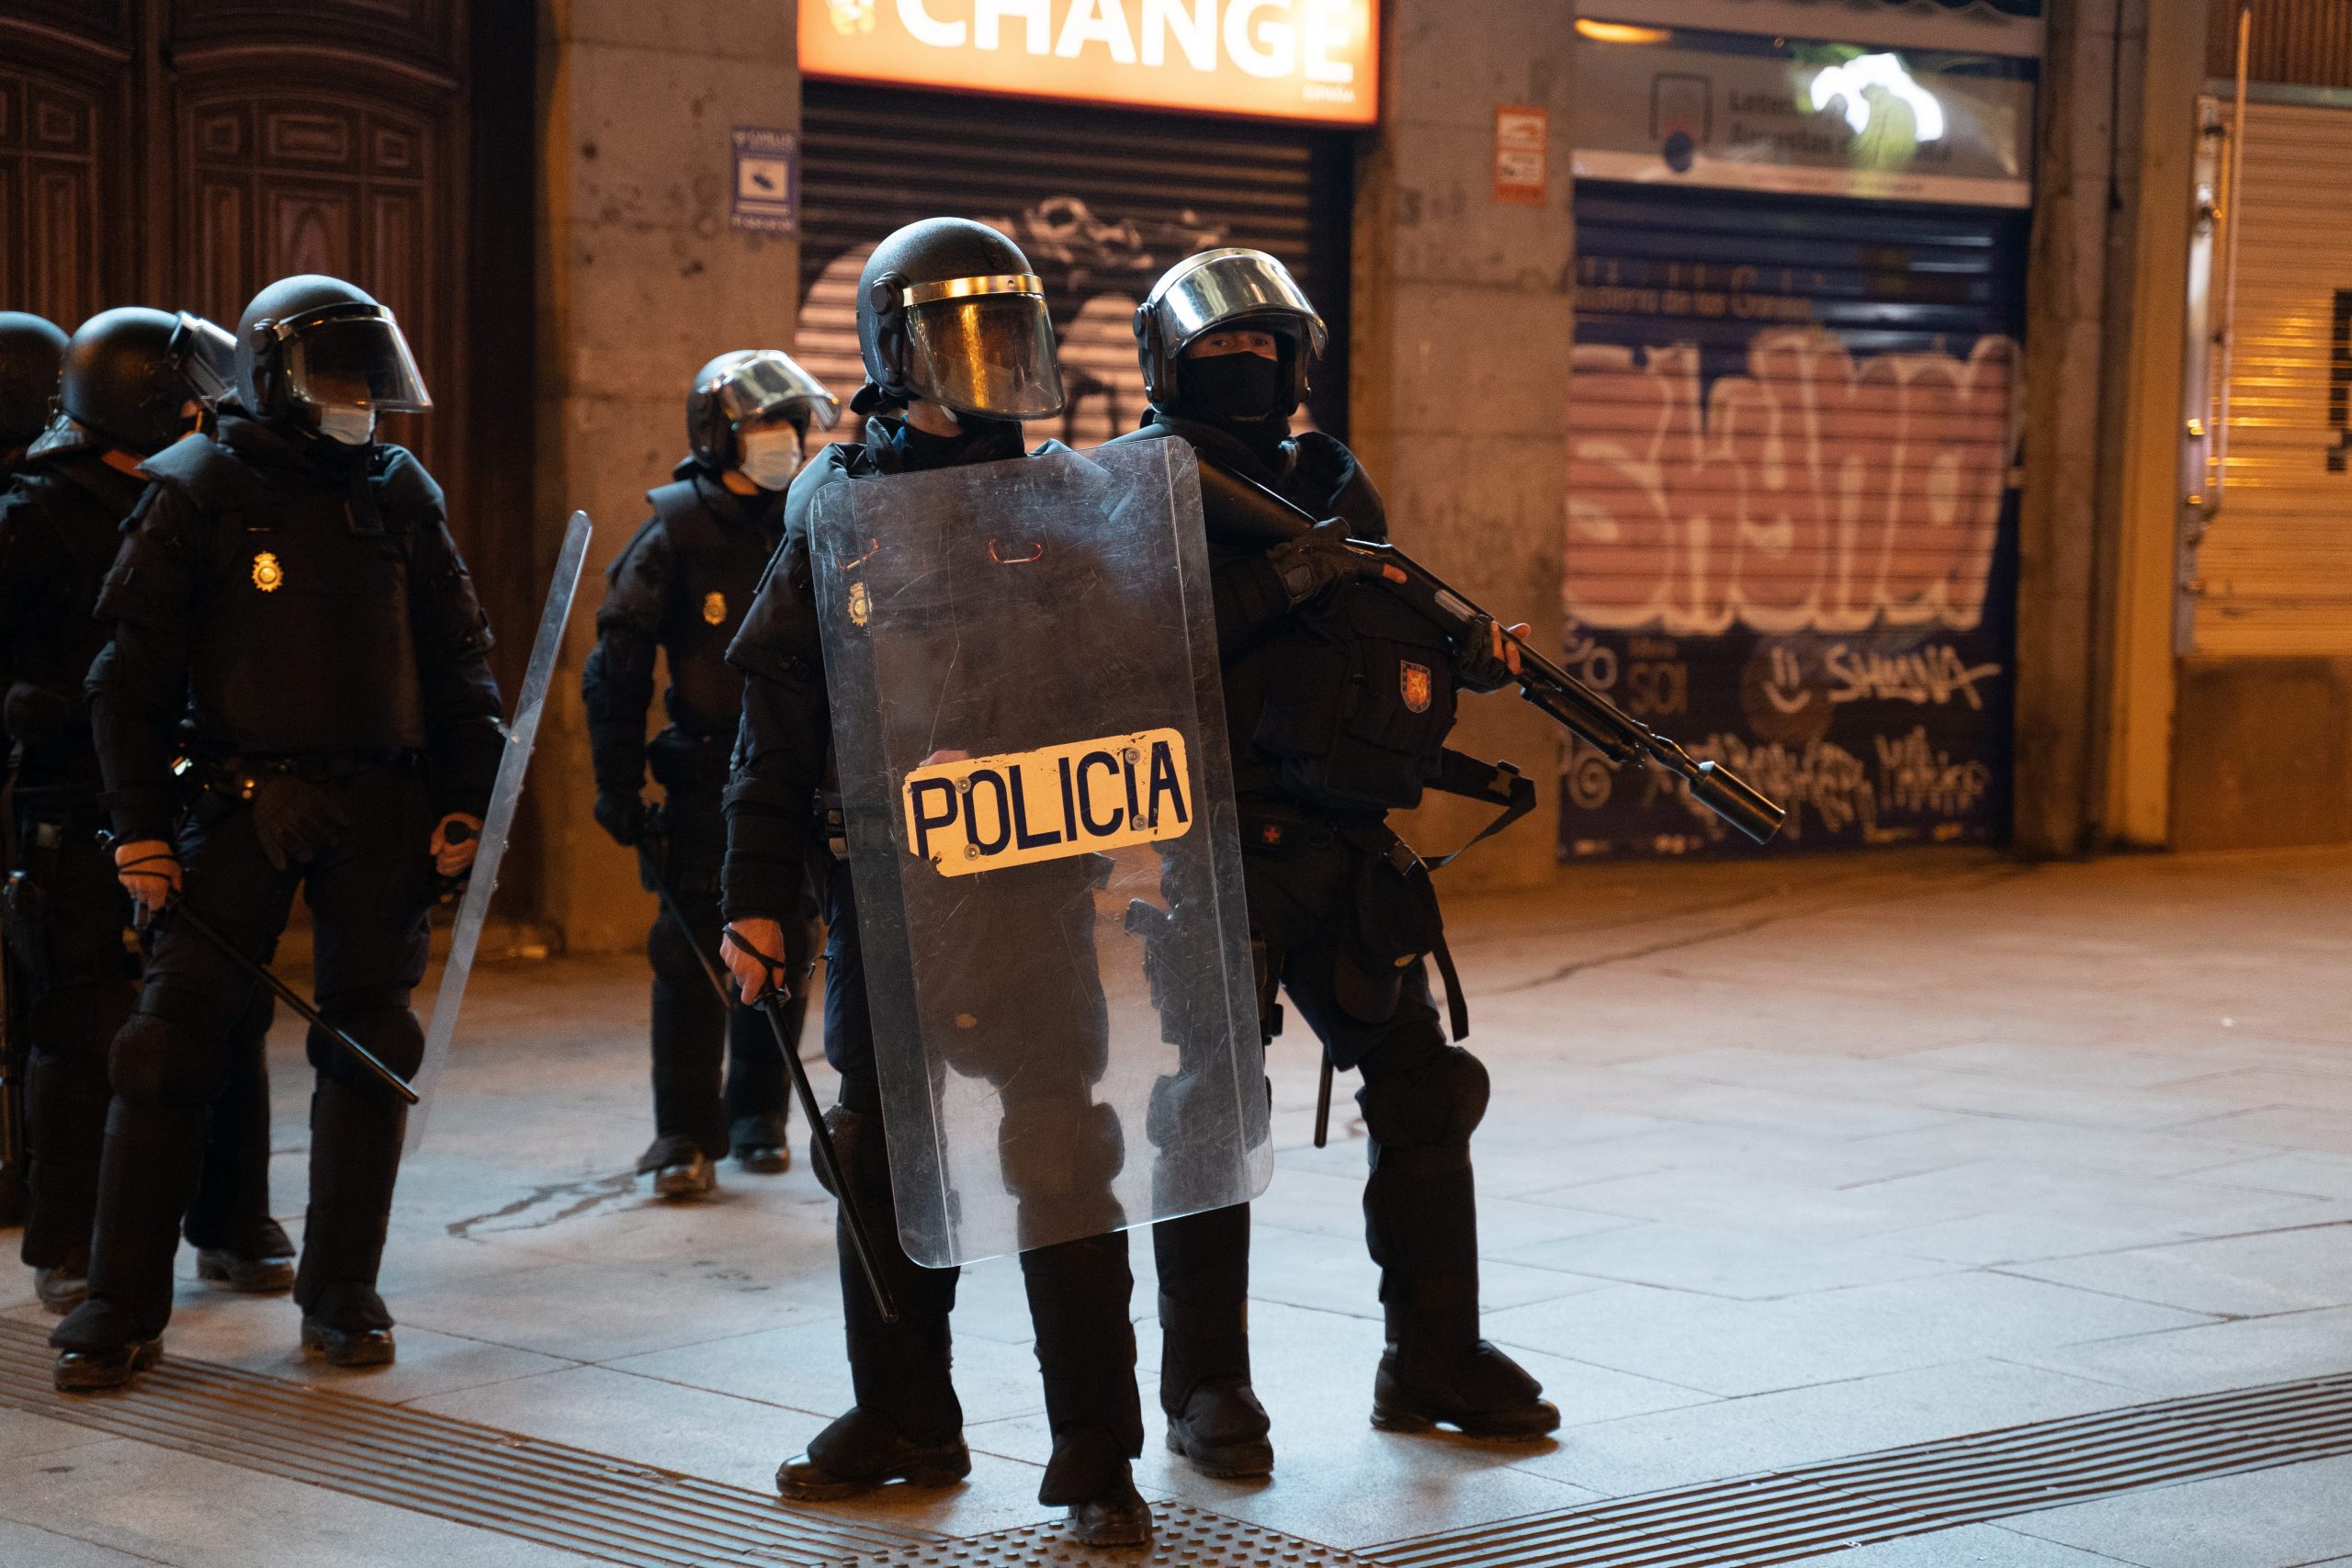 7 CM SPANISH NATIONAL POLICE